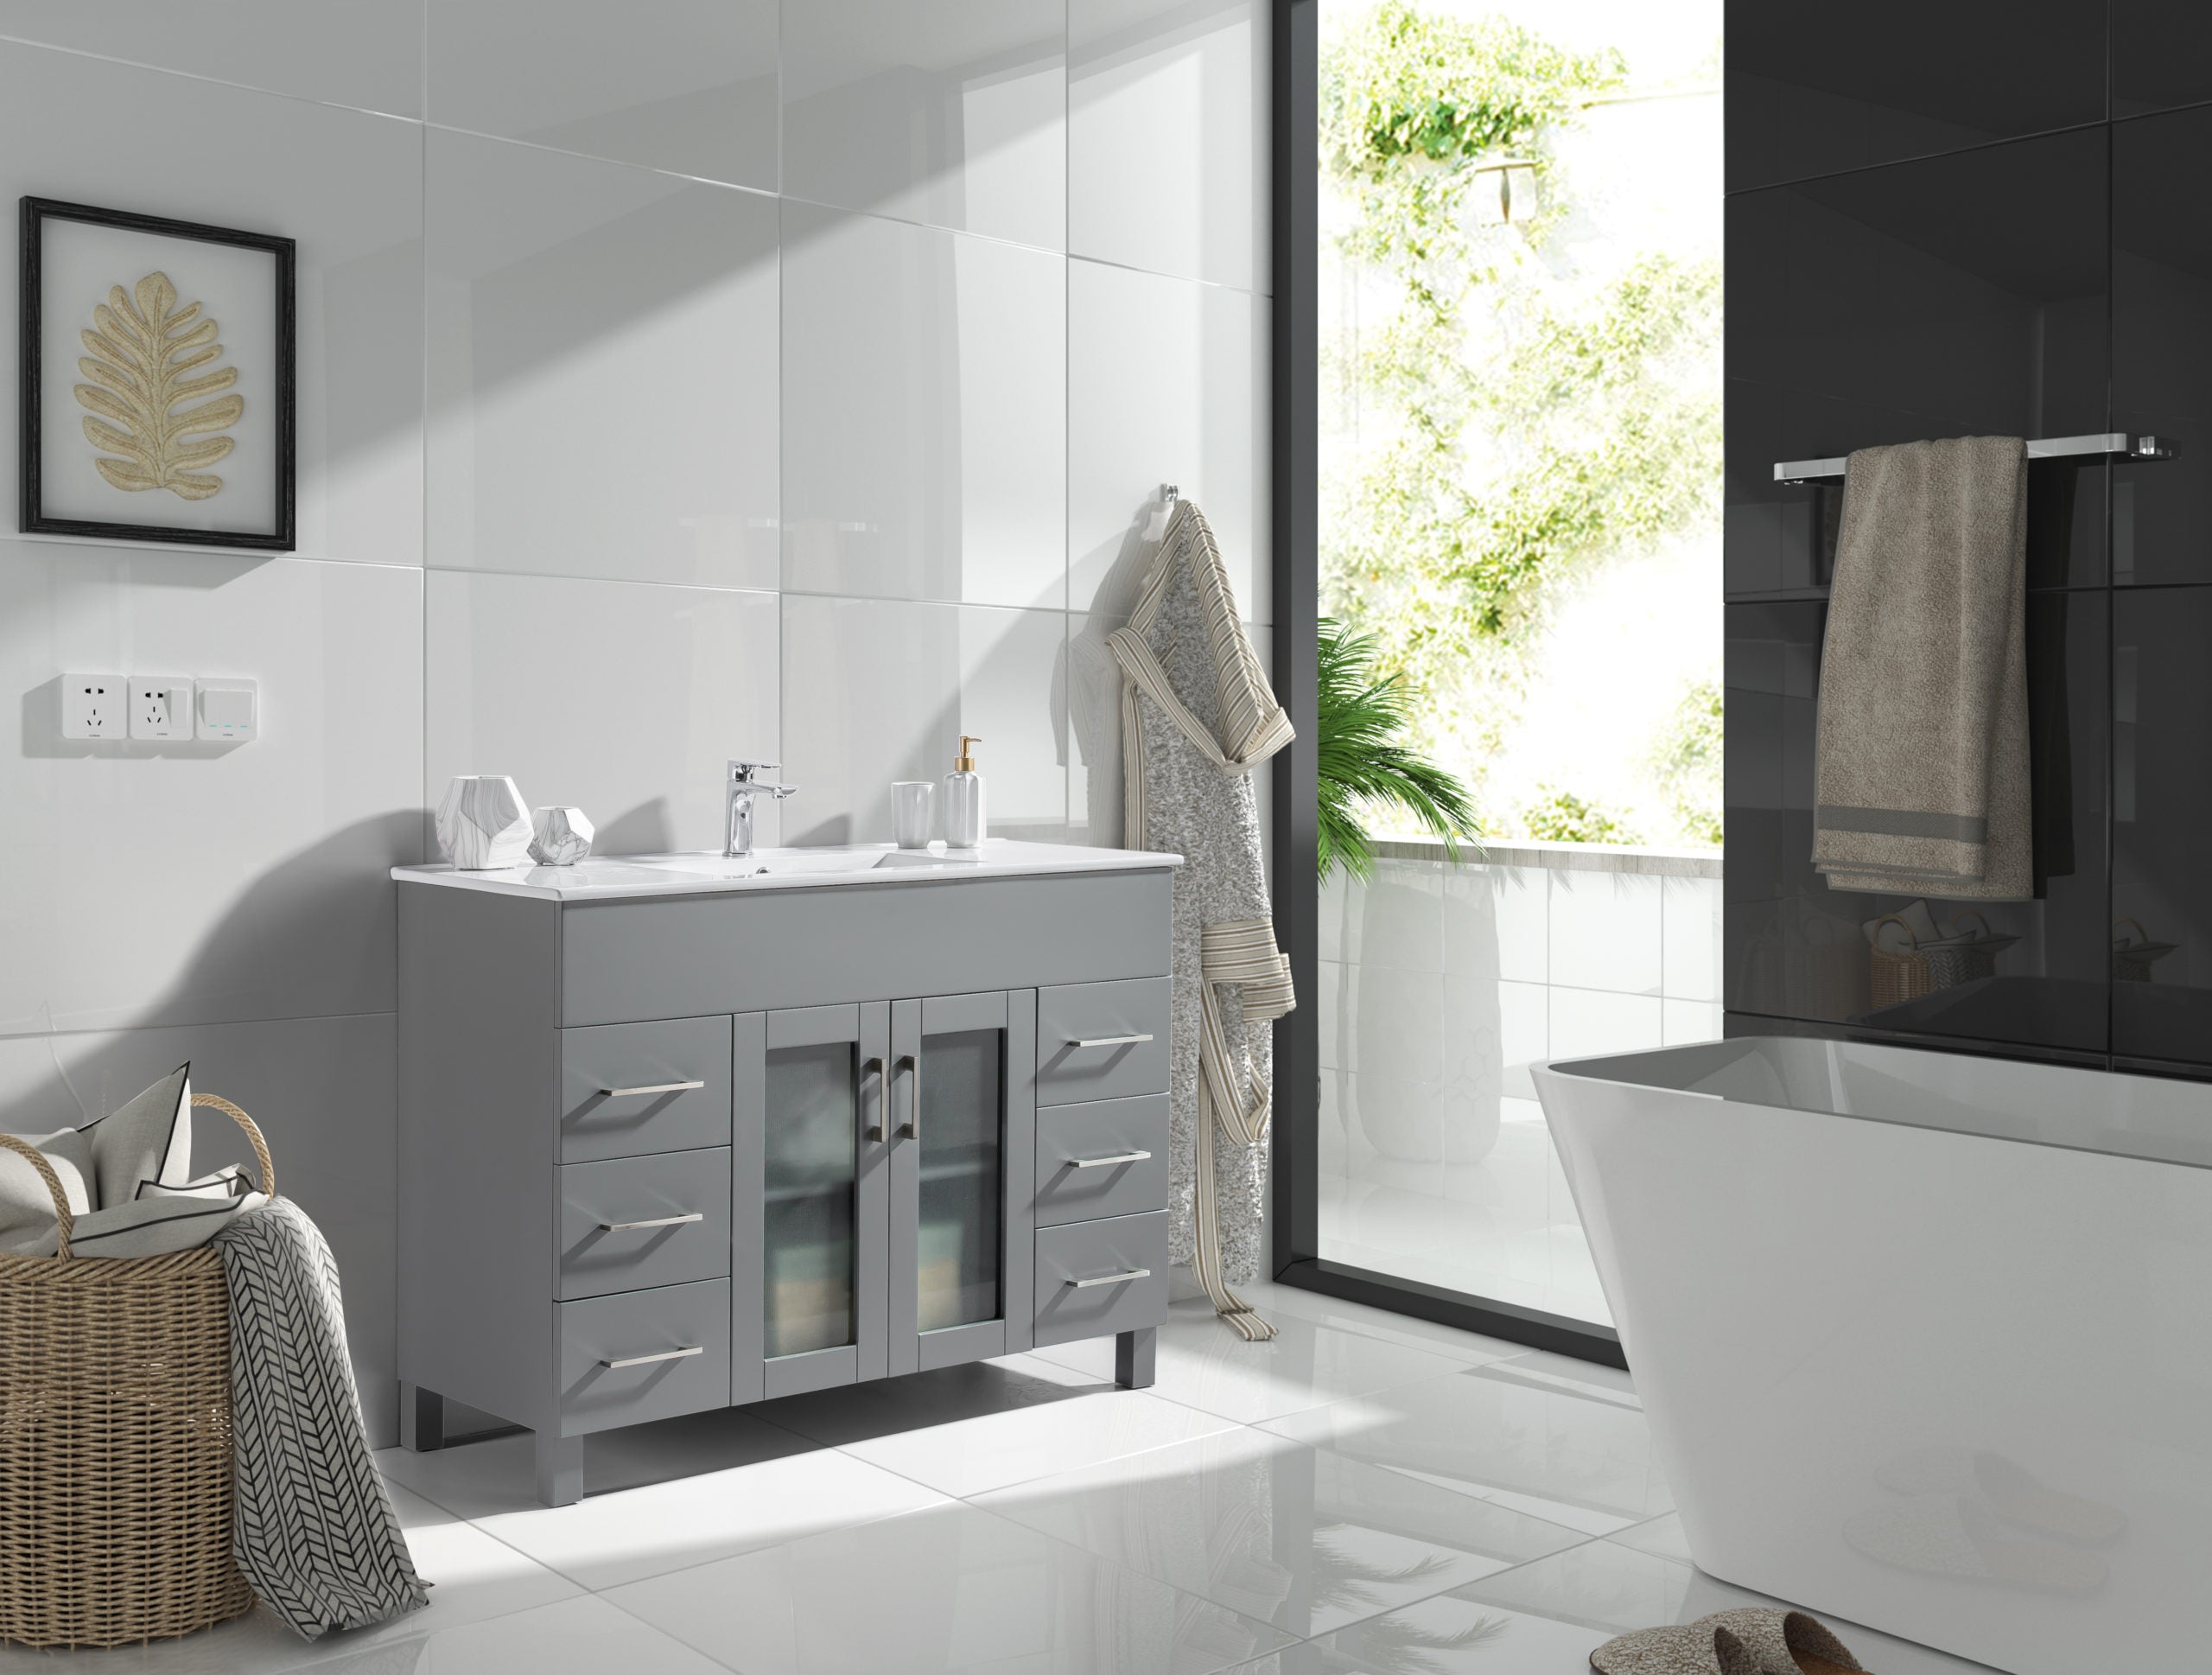 Laviva Nova 48" Gray Bathroom Vanity with White Ceramic Basin Countertop | 31321529-48G-CB